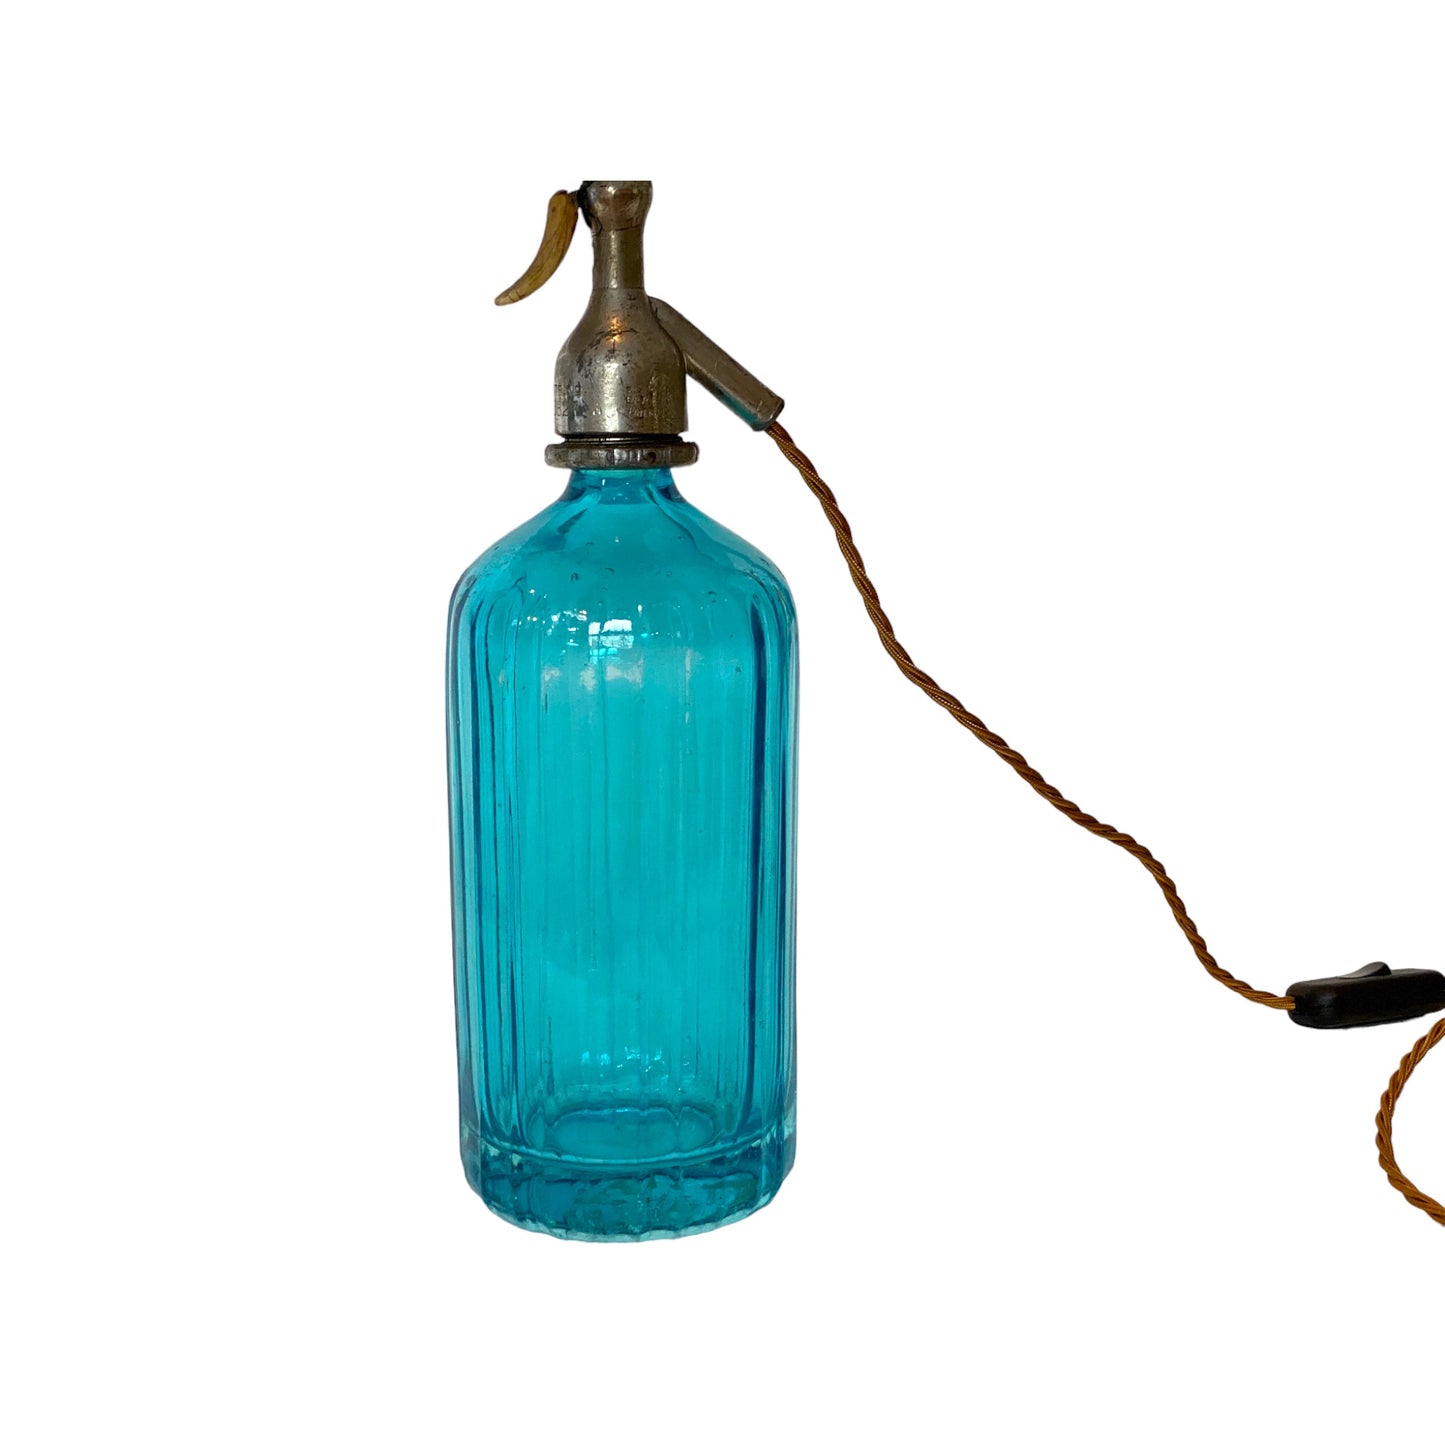 Aqua soda siphon lamp